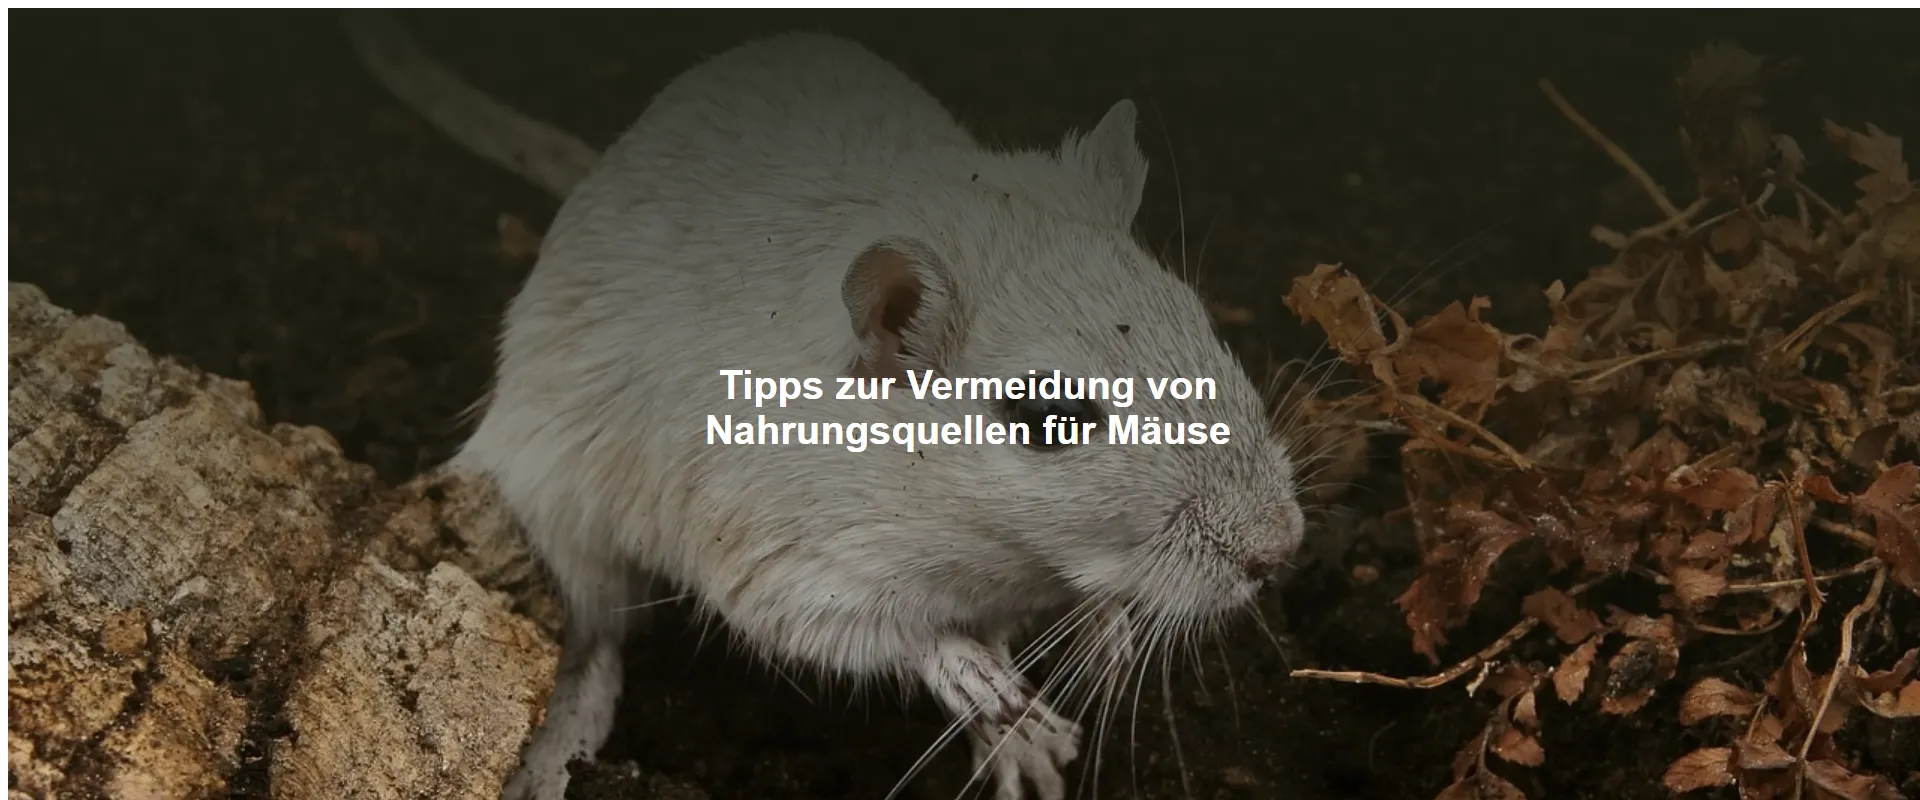 Tipps zur Vermeidung von Nahrungsquellen für Mäuse